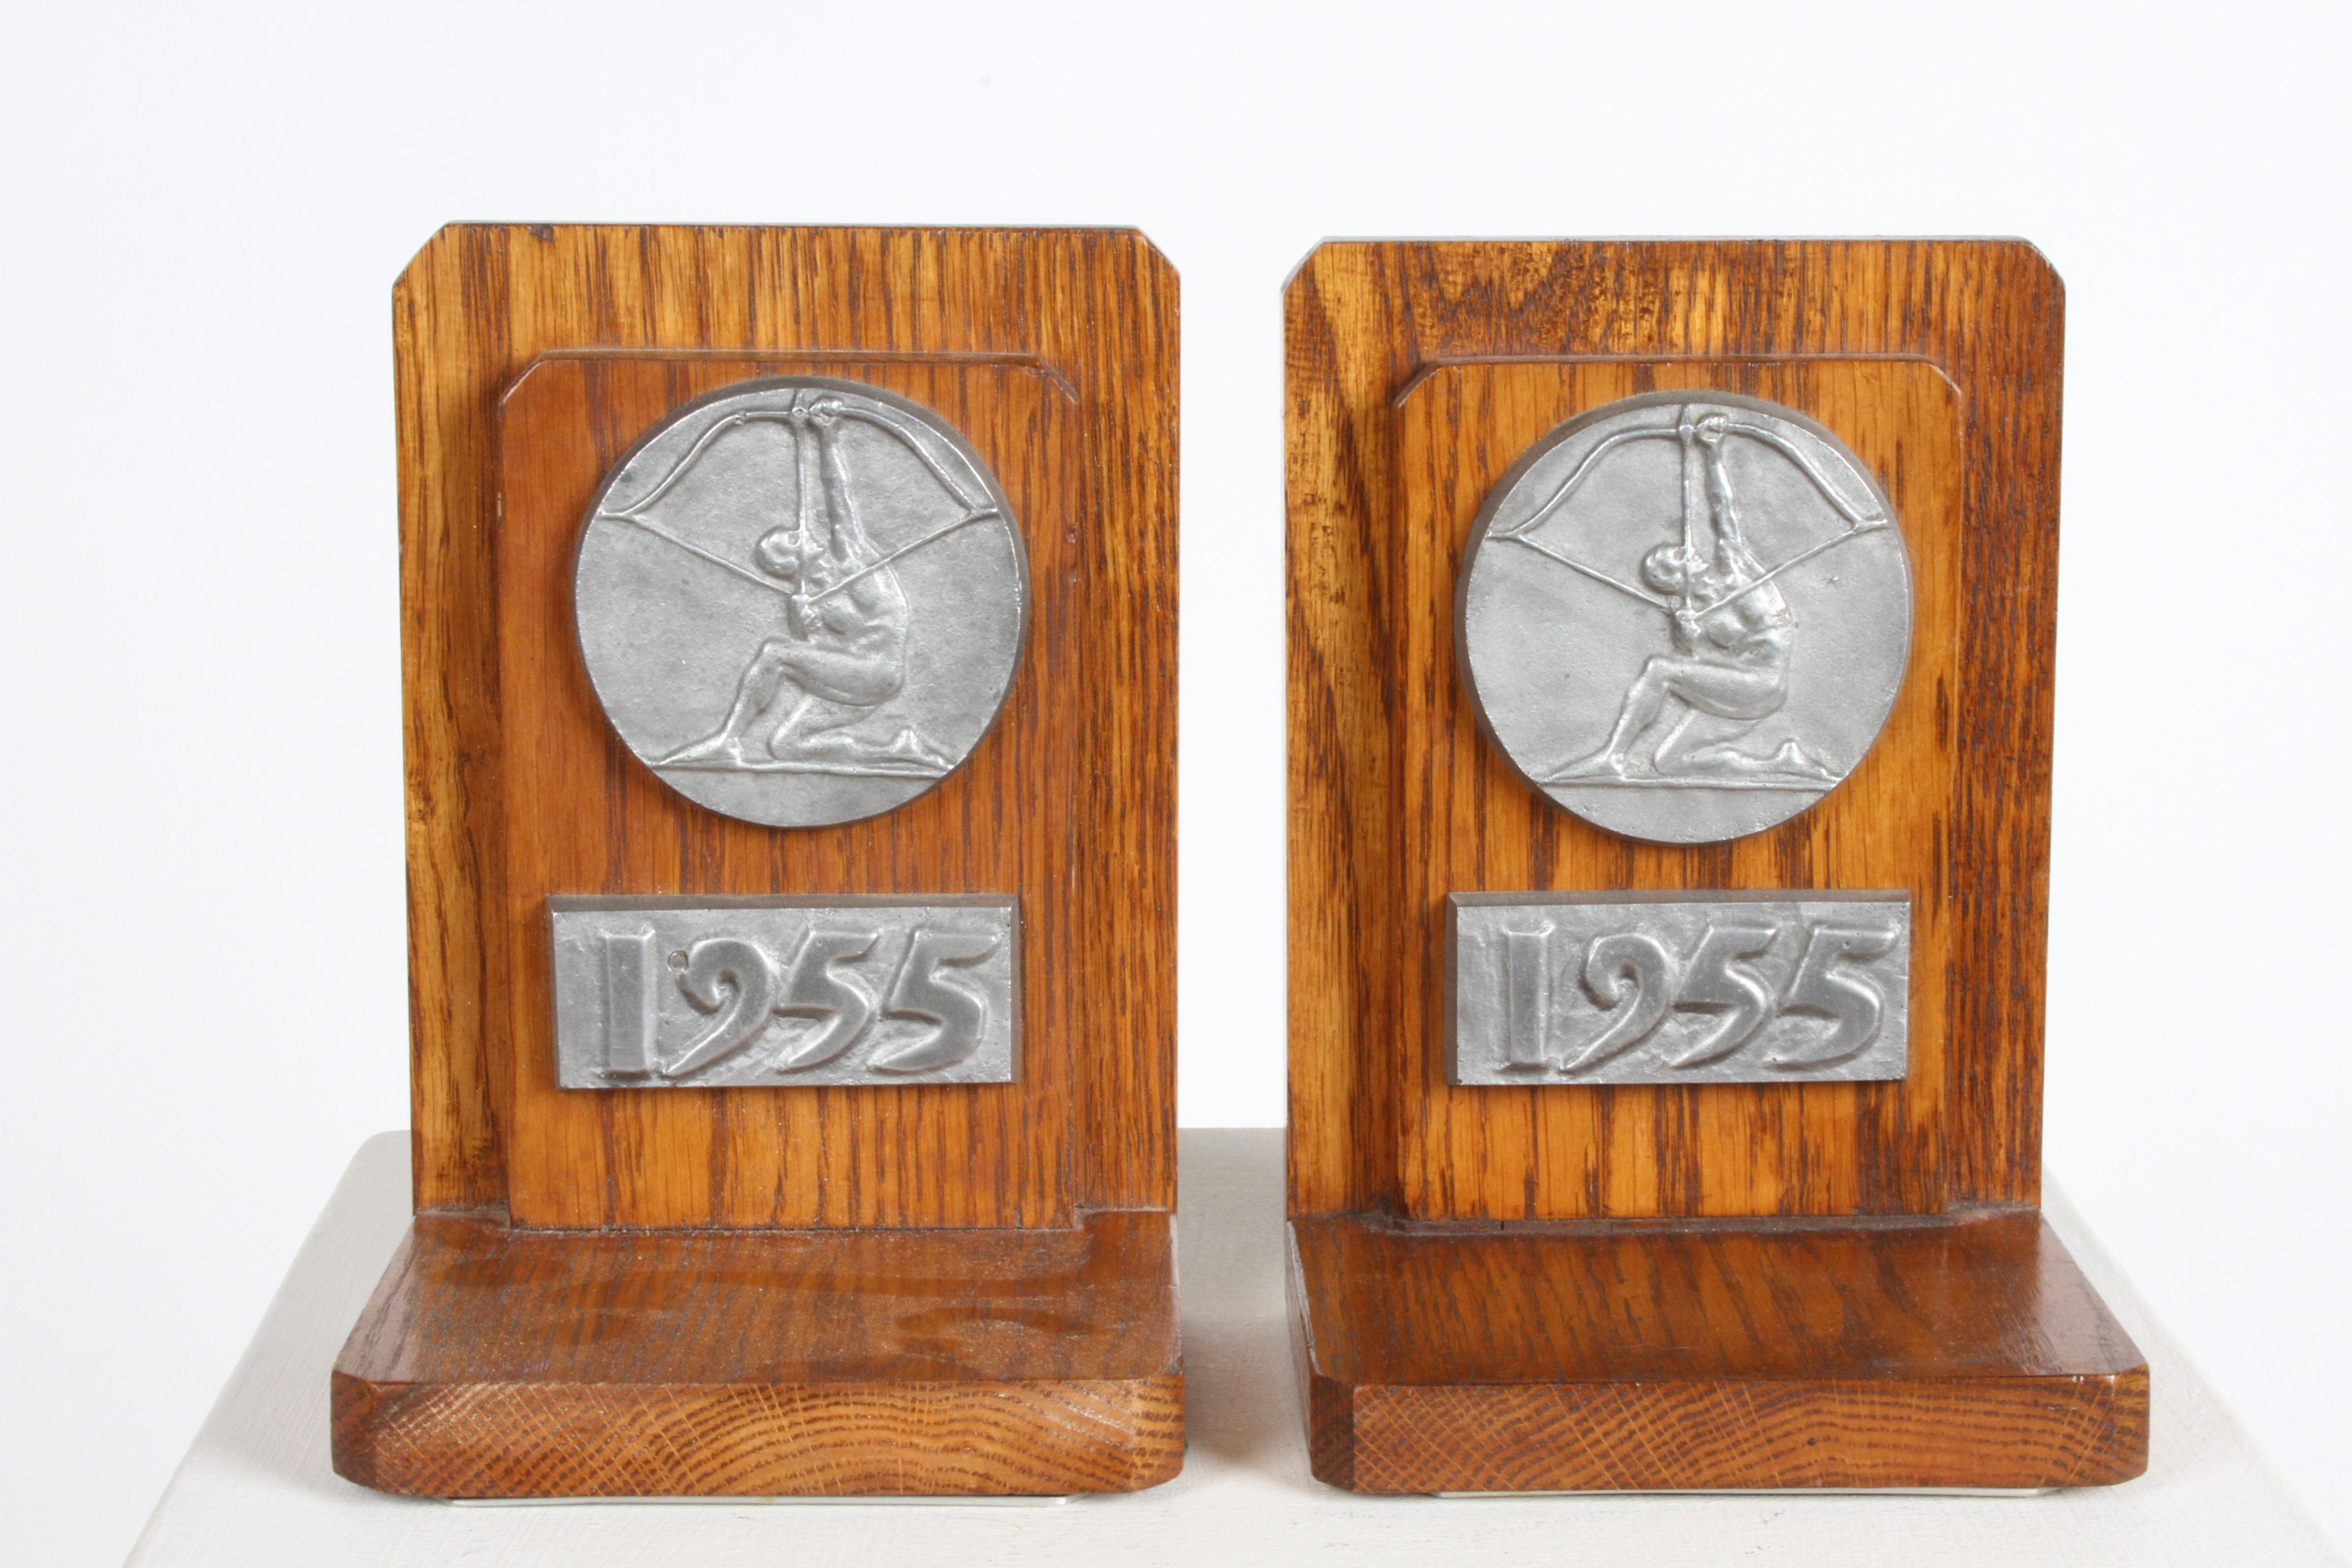 Seltenes Paar Buchstützen mit gegossenem Aluminiumsiegel der Cranbrook School - Aim High Logo und der Jahreszahl 1955 auf den Eichenbrettern. Das Aim High-Logo wurde von Eero Saarinen entworfen, dem Sohn von Eliel Saarinen, der den Campus der Schule